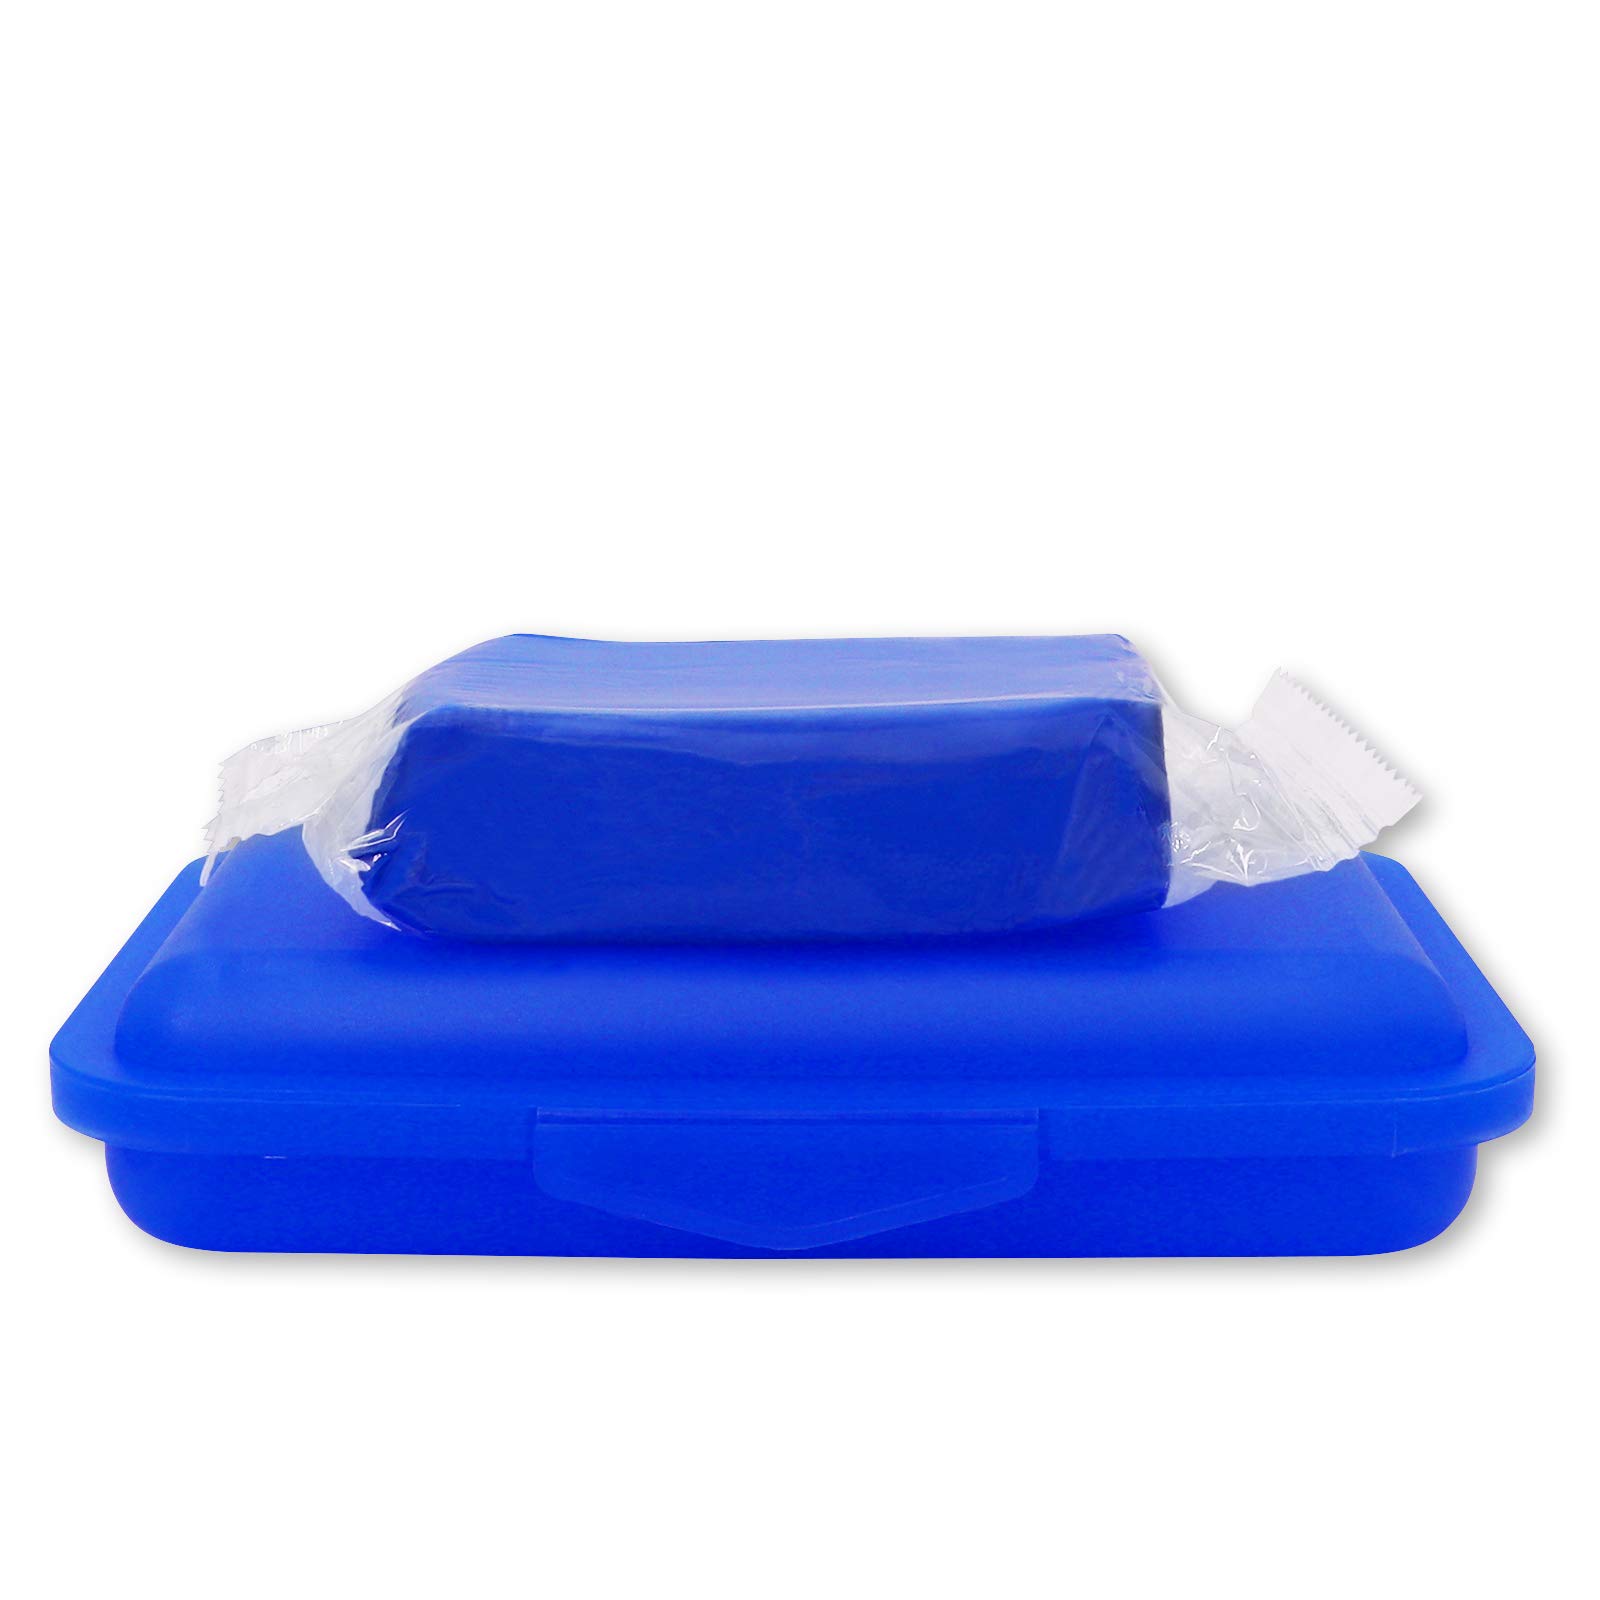 Reinigungsknete blau 200 g + Aufbewahrungsbox - Polierknete Lackknete Clay-Bar Auto-Lack-Knete Lackpolitur - entfernt Baumharz Insekten Flugrost Farbspuren Bremsstaub u.v.m. von Brestol